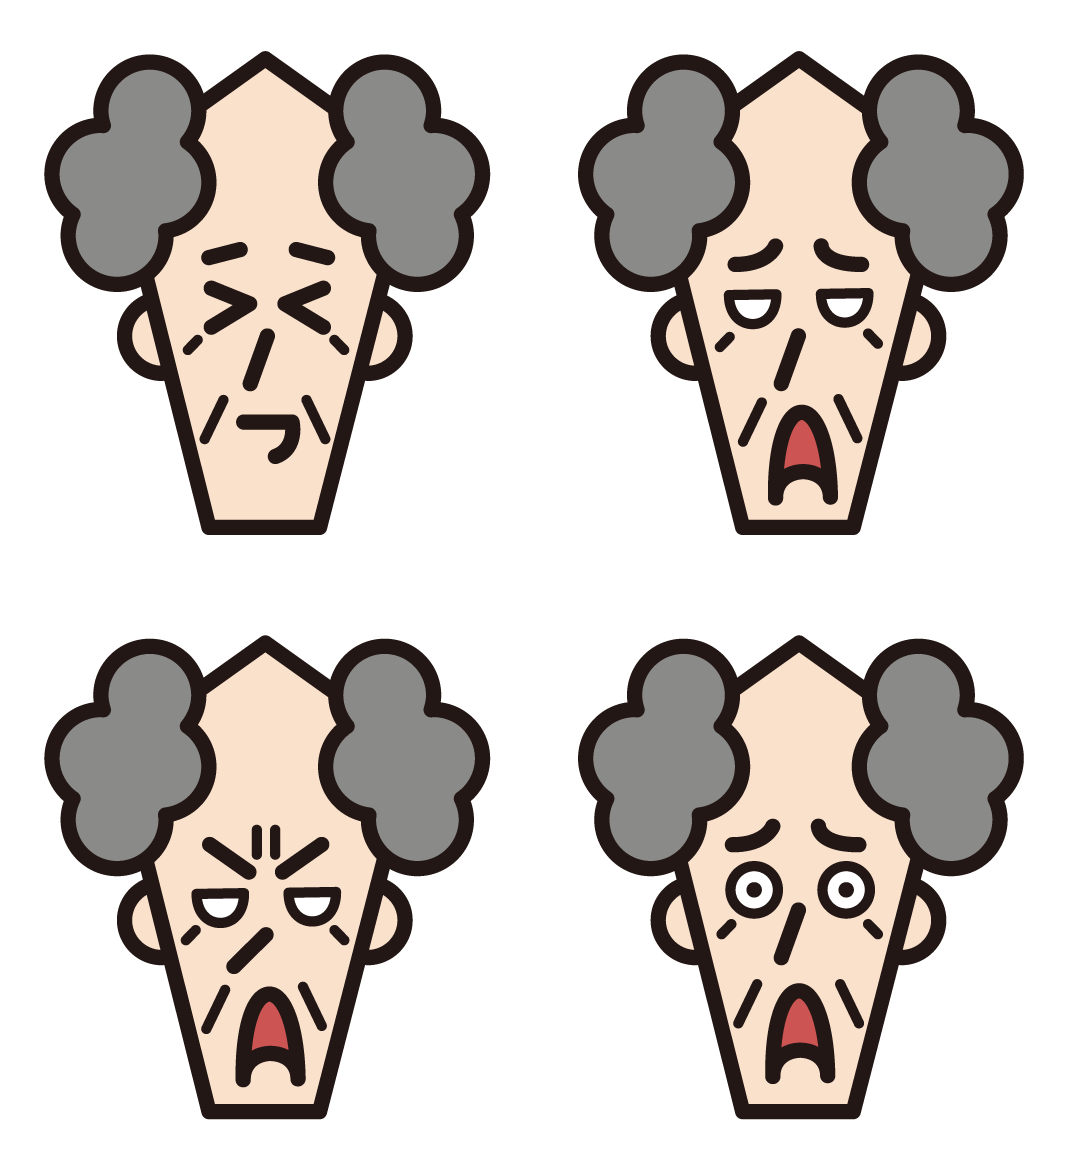 할아버지의 다양한 얼굴 표정 3 가지 삽화 (흐트러진 헤어 스타일)